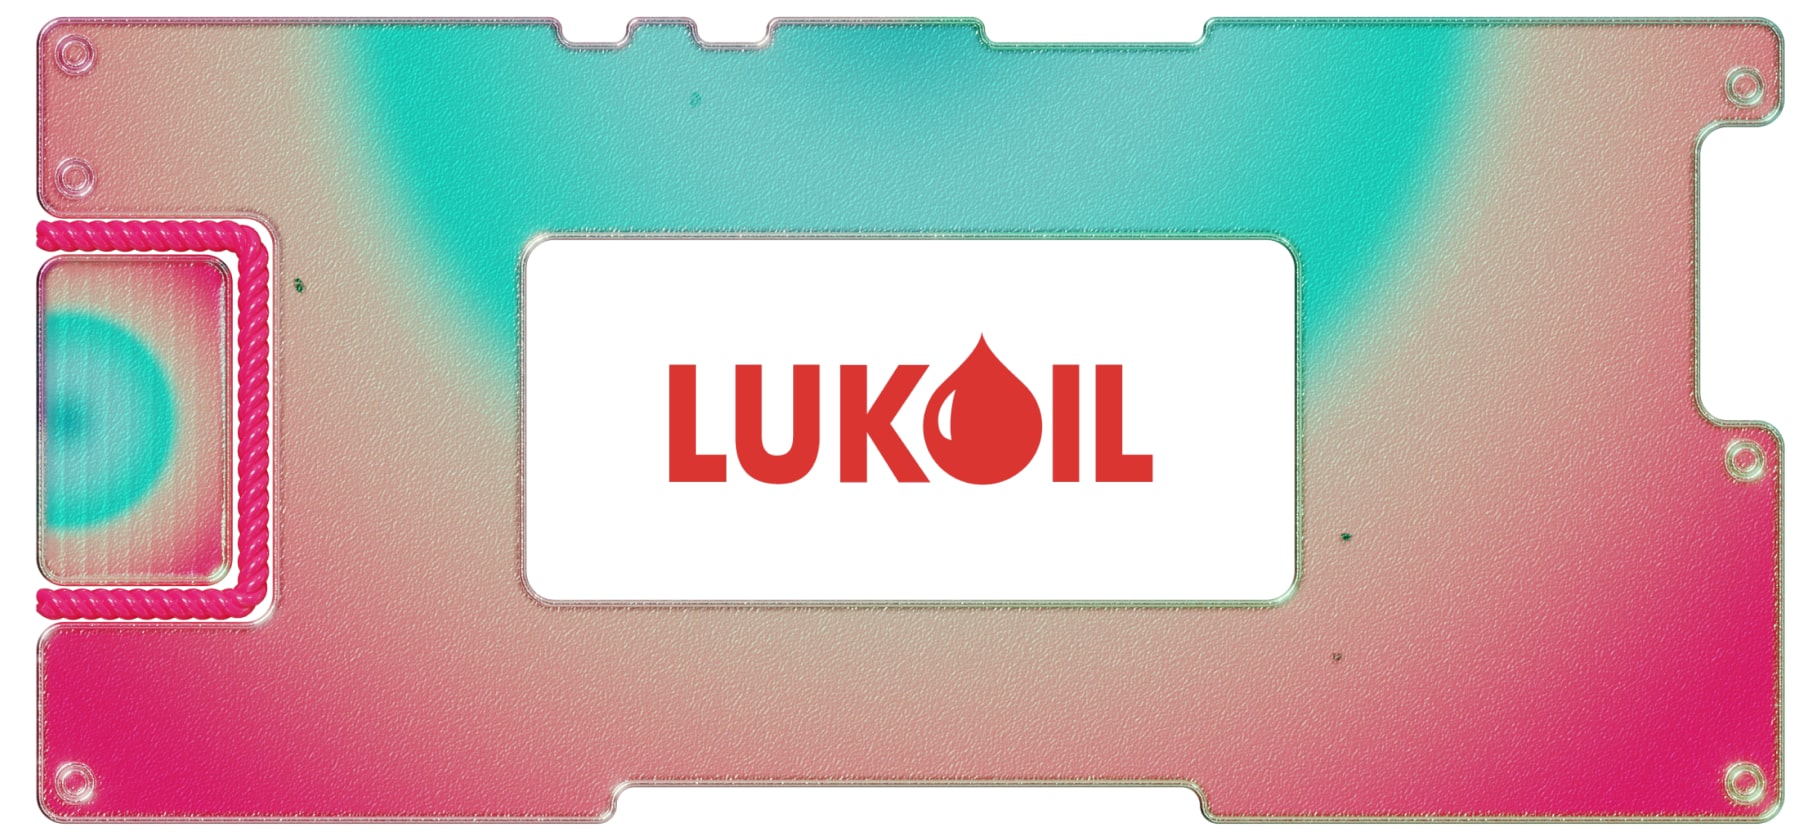 Обзор «Лукойл»: крупнейшая частная нефтегазовая компания России